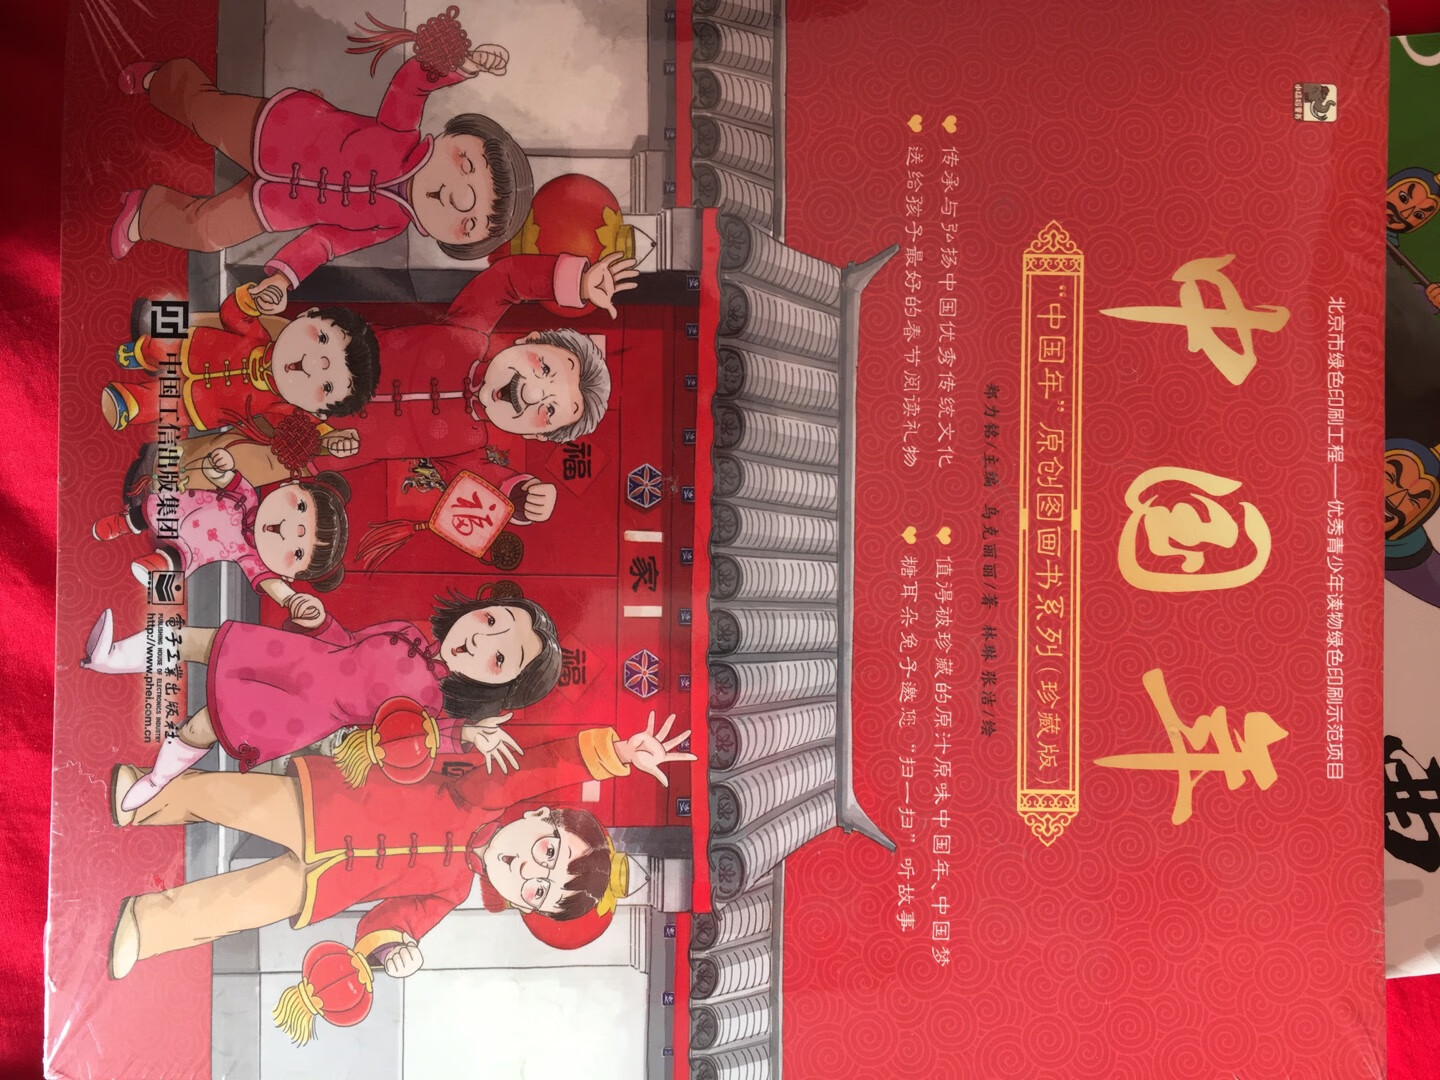 中国似的春节，现在每家的生活条件都好了，孩子们啥都不缺，缺的是精神食粮！这本书介绍了传统中国节日，给孩子留下了深刻印象！